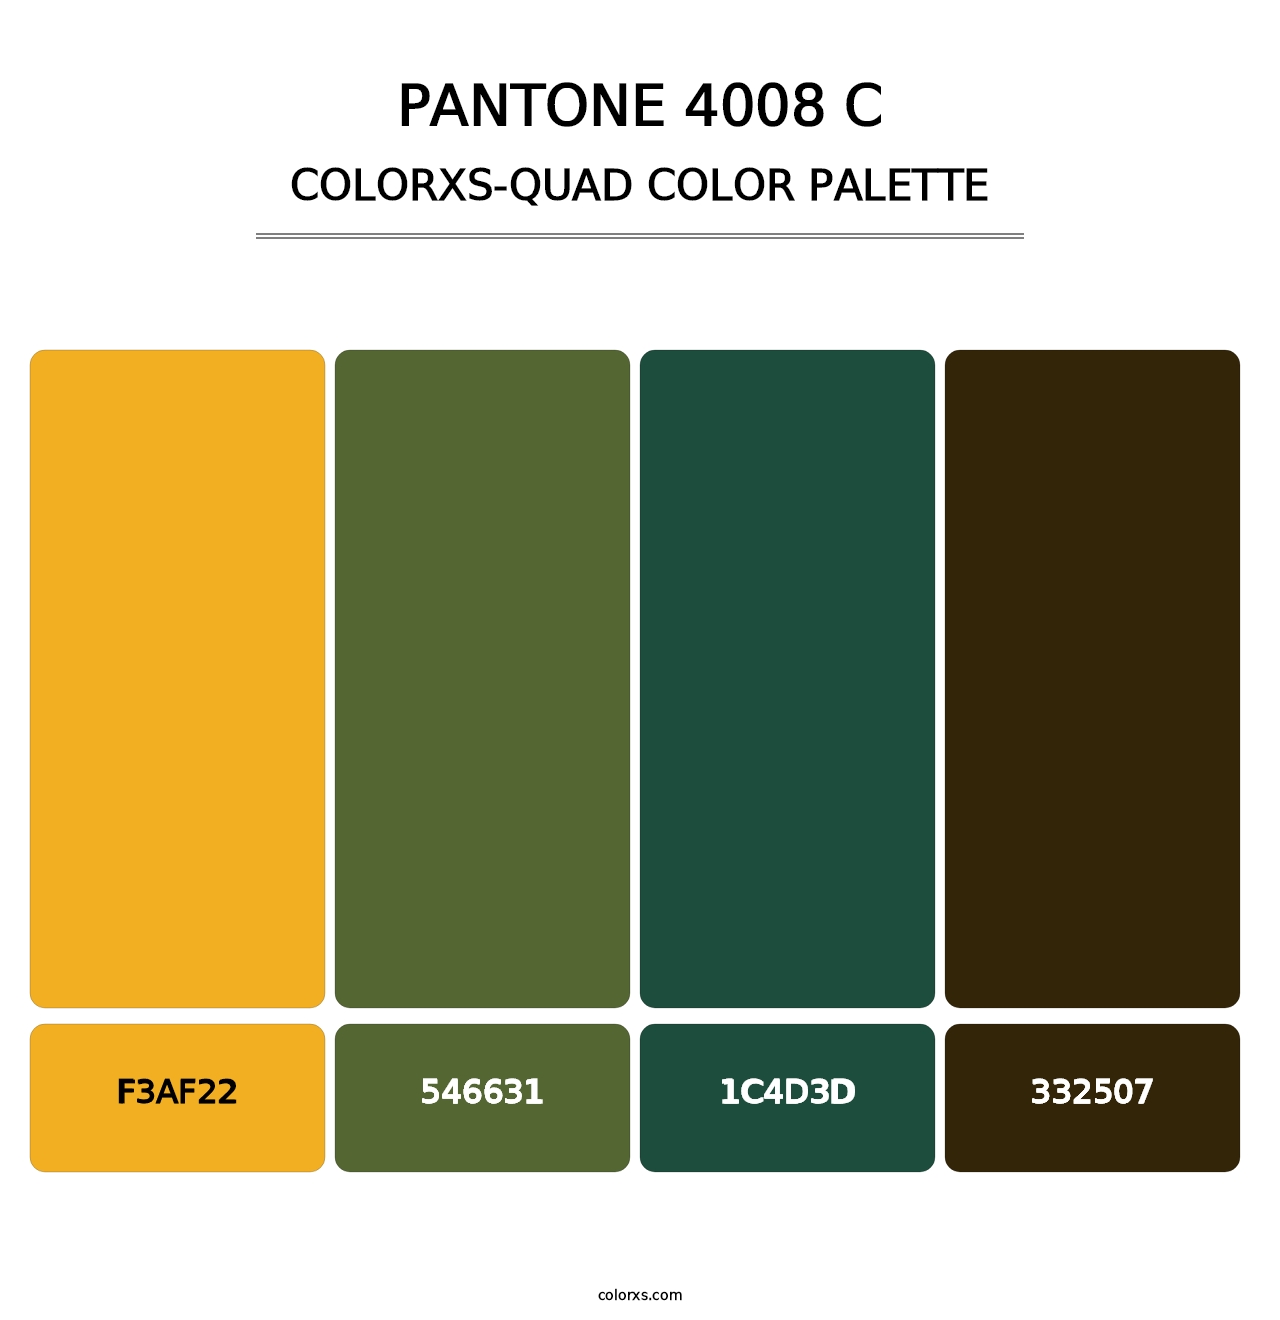 PANTONE 4008 C - Colorxs Quad Palette